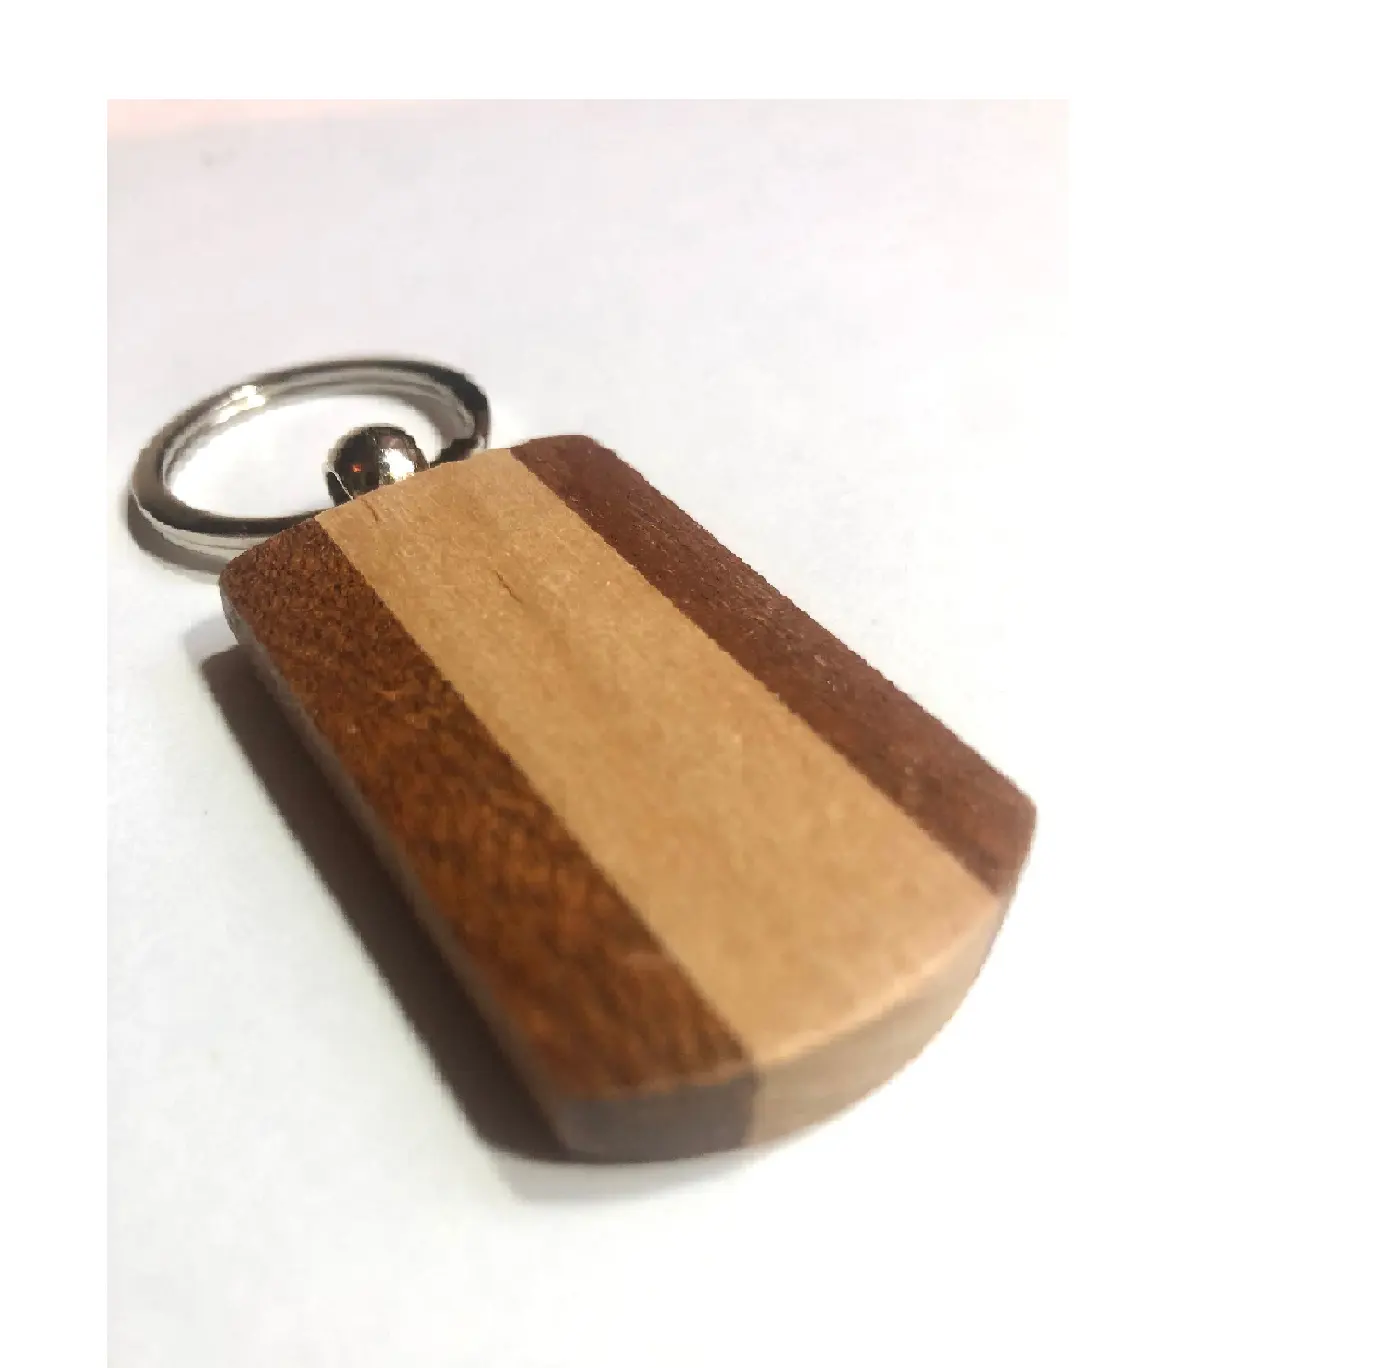 ユニークなデザイン木製キーホルダー印刷ロゴ付き木製キーホルダー木製キーホルダー